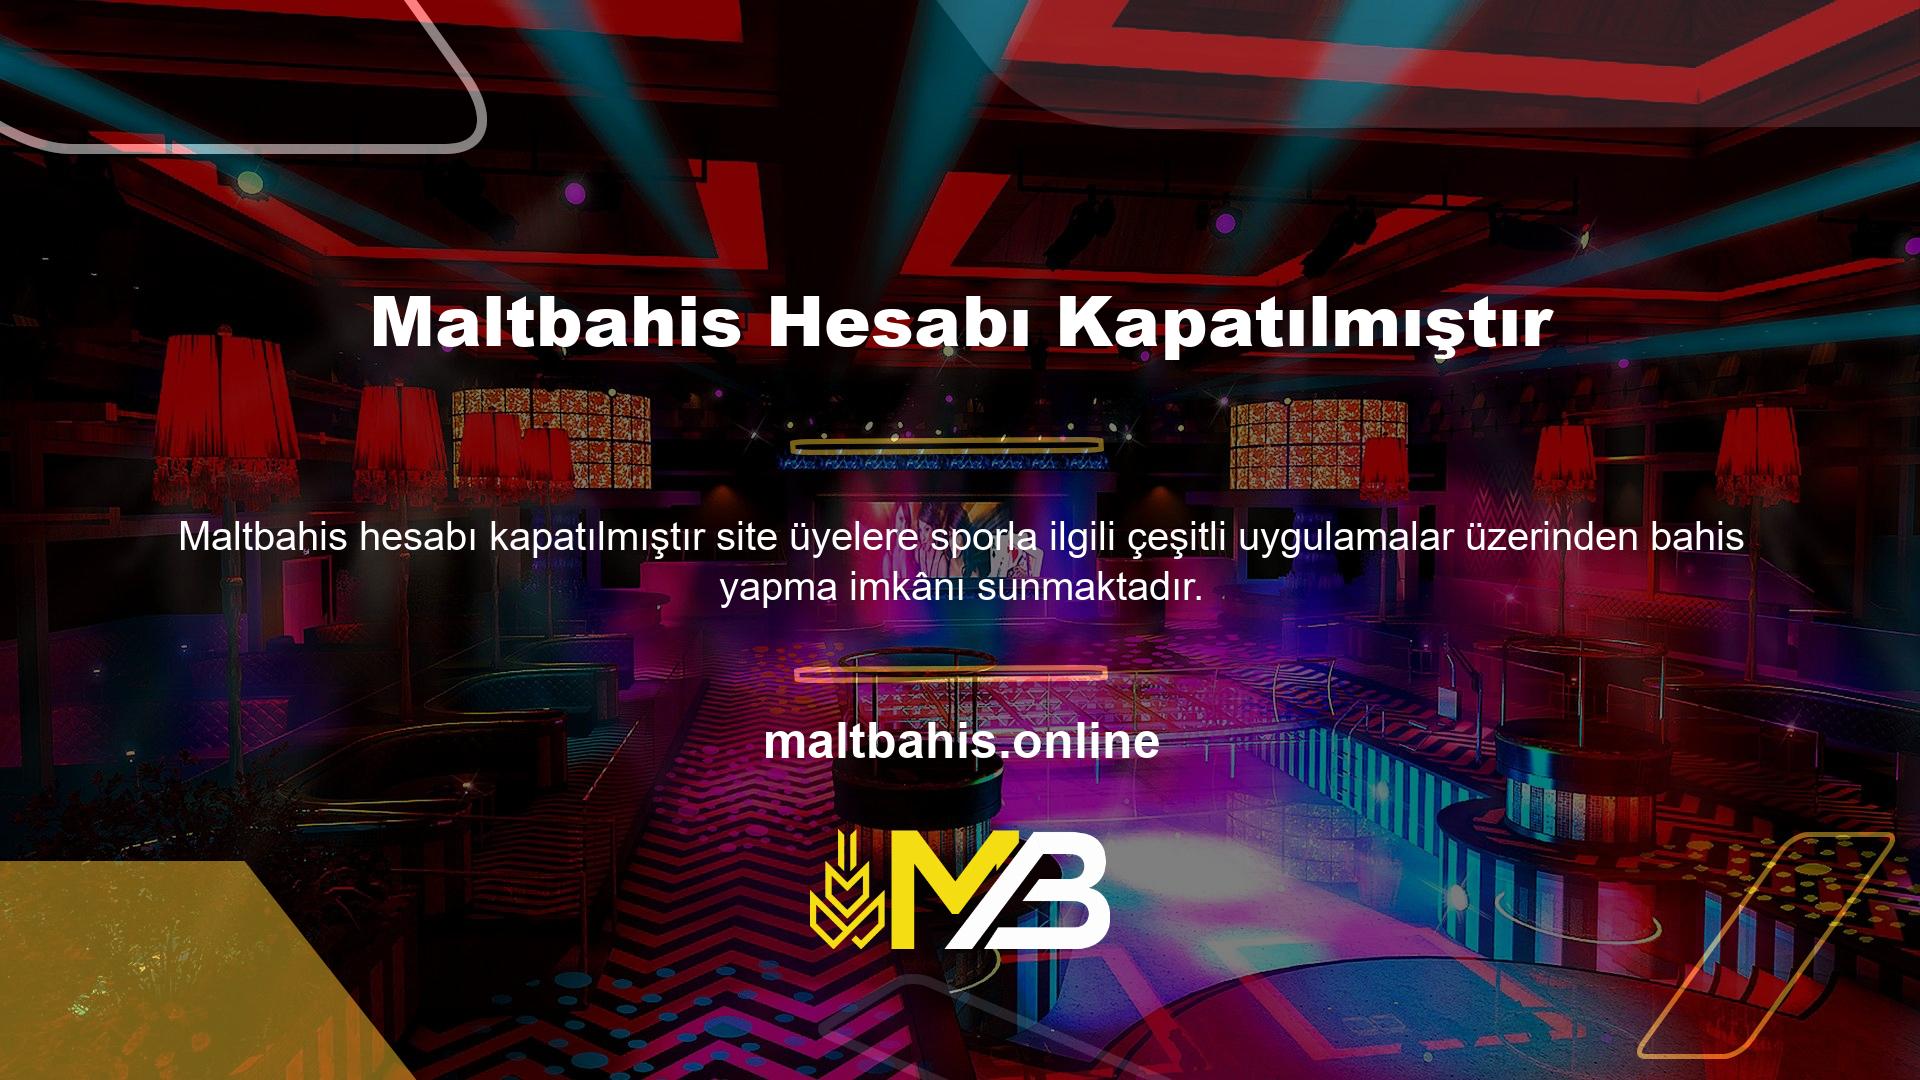 Maltbahis web sitesinde spor bahis uygulamaları ve canlı spor bahis uygulamalarının yanı sıra bahisler için ödeme yöntemleri de sunulmaktadır